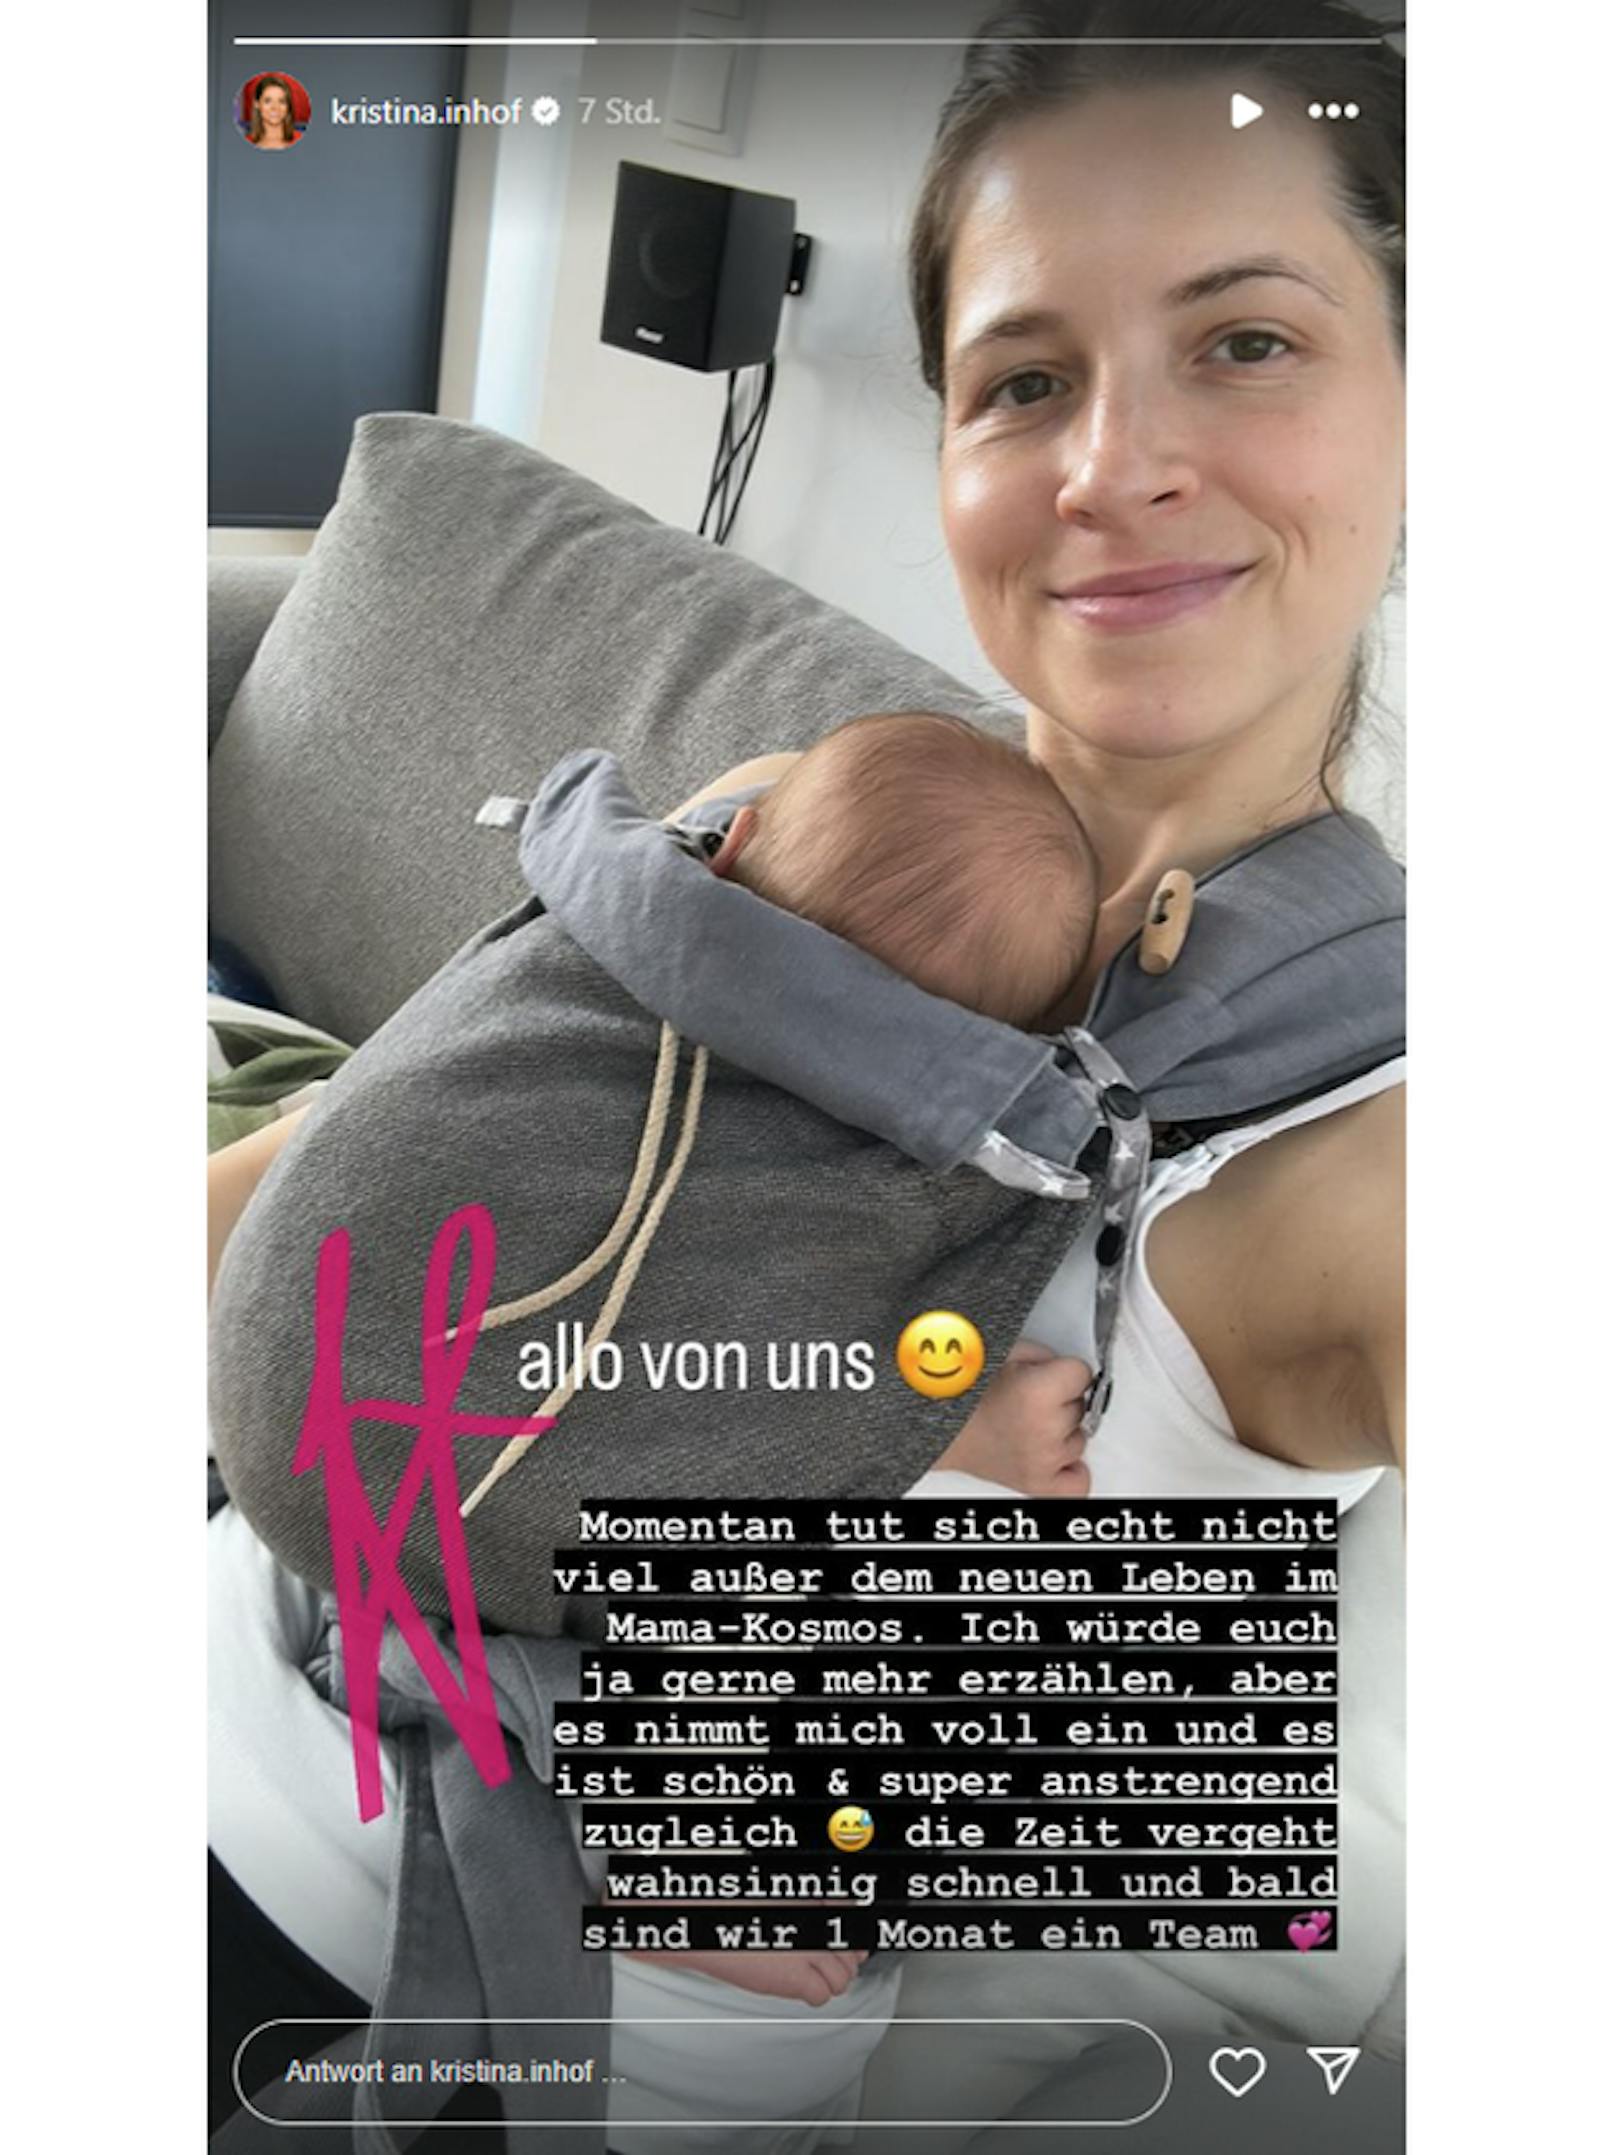 Kristina Inhof zeigt sich mit ihrem Baby.